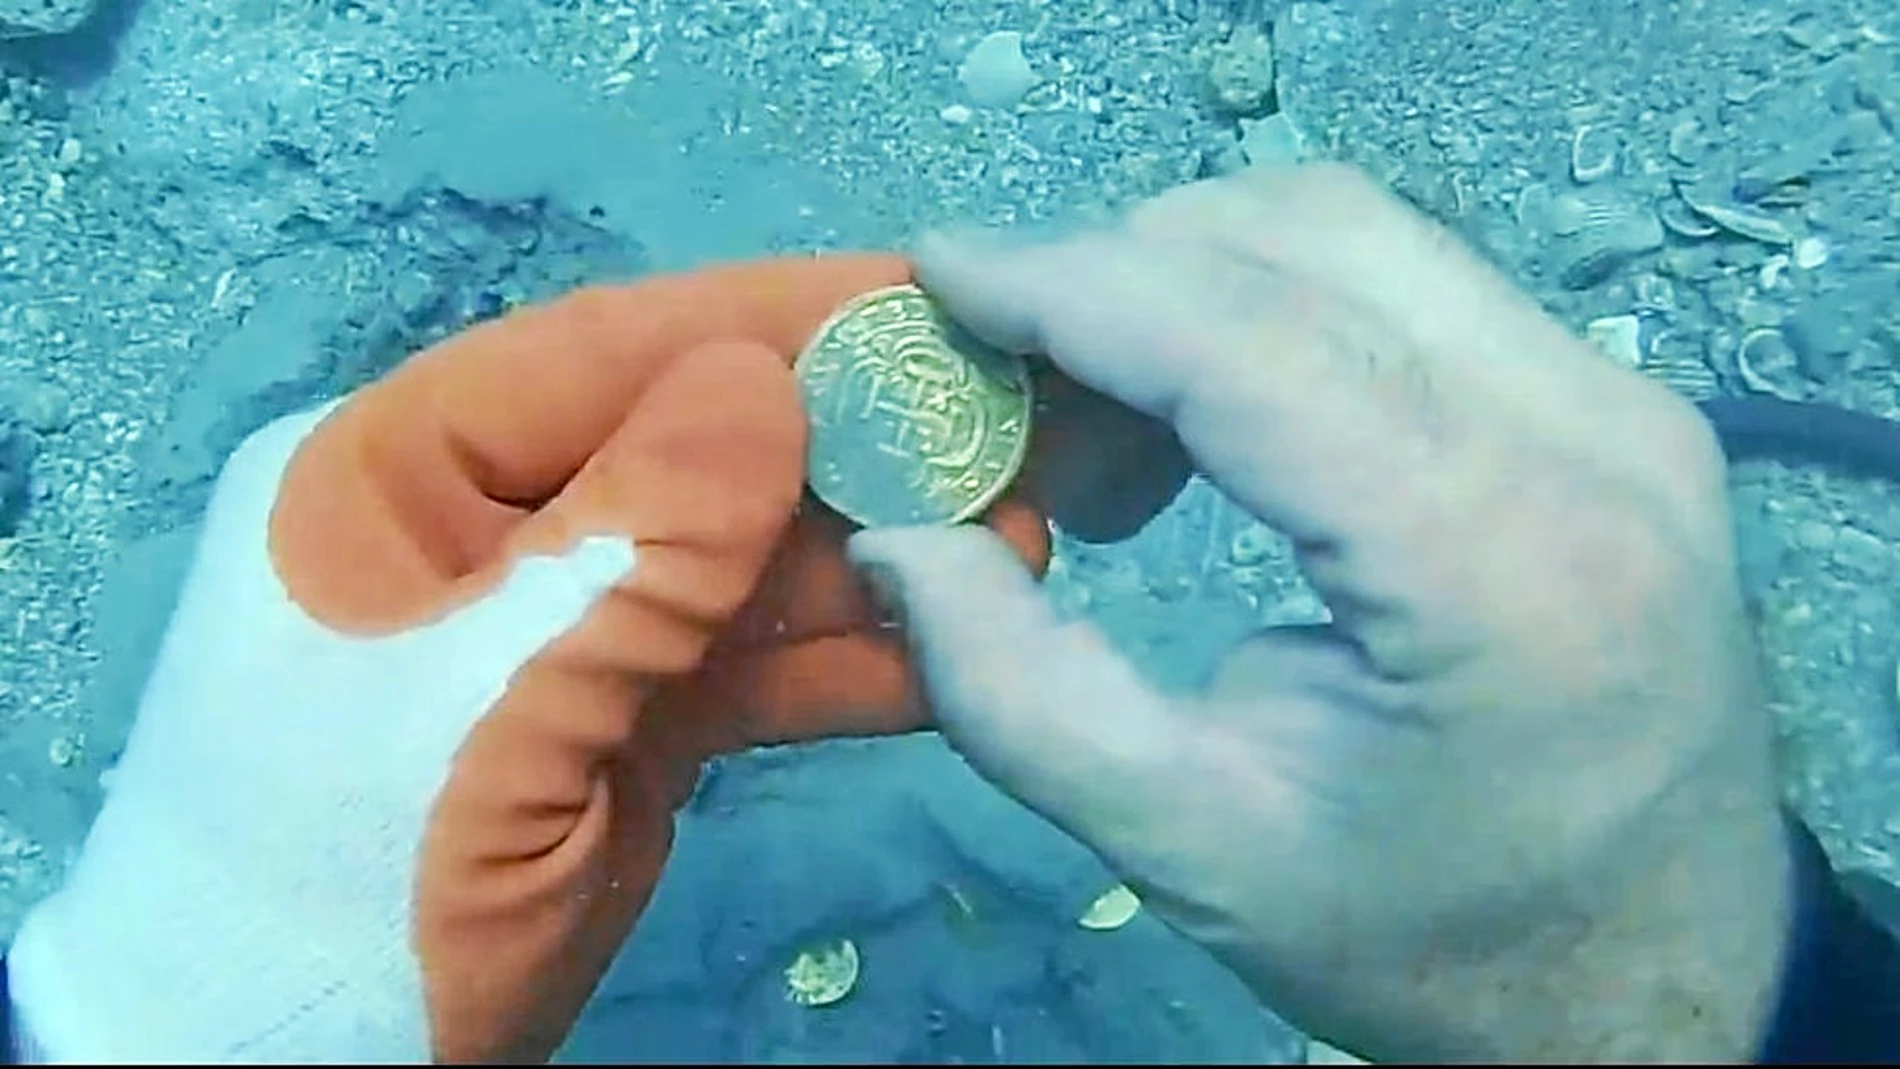 Aquí está una de las espectaculares monedas halladas en el fondo del mar, en perfecto estado de conservación. Una cincuentena son las que hasta ahora han declarado.